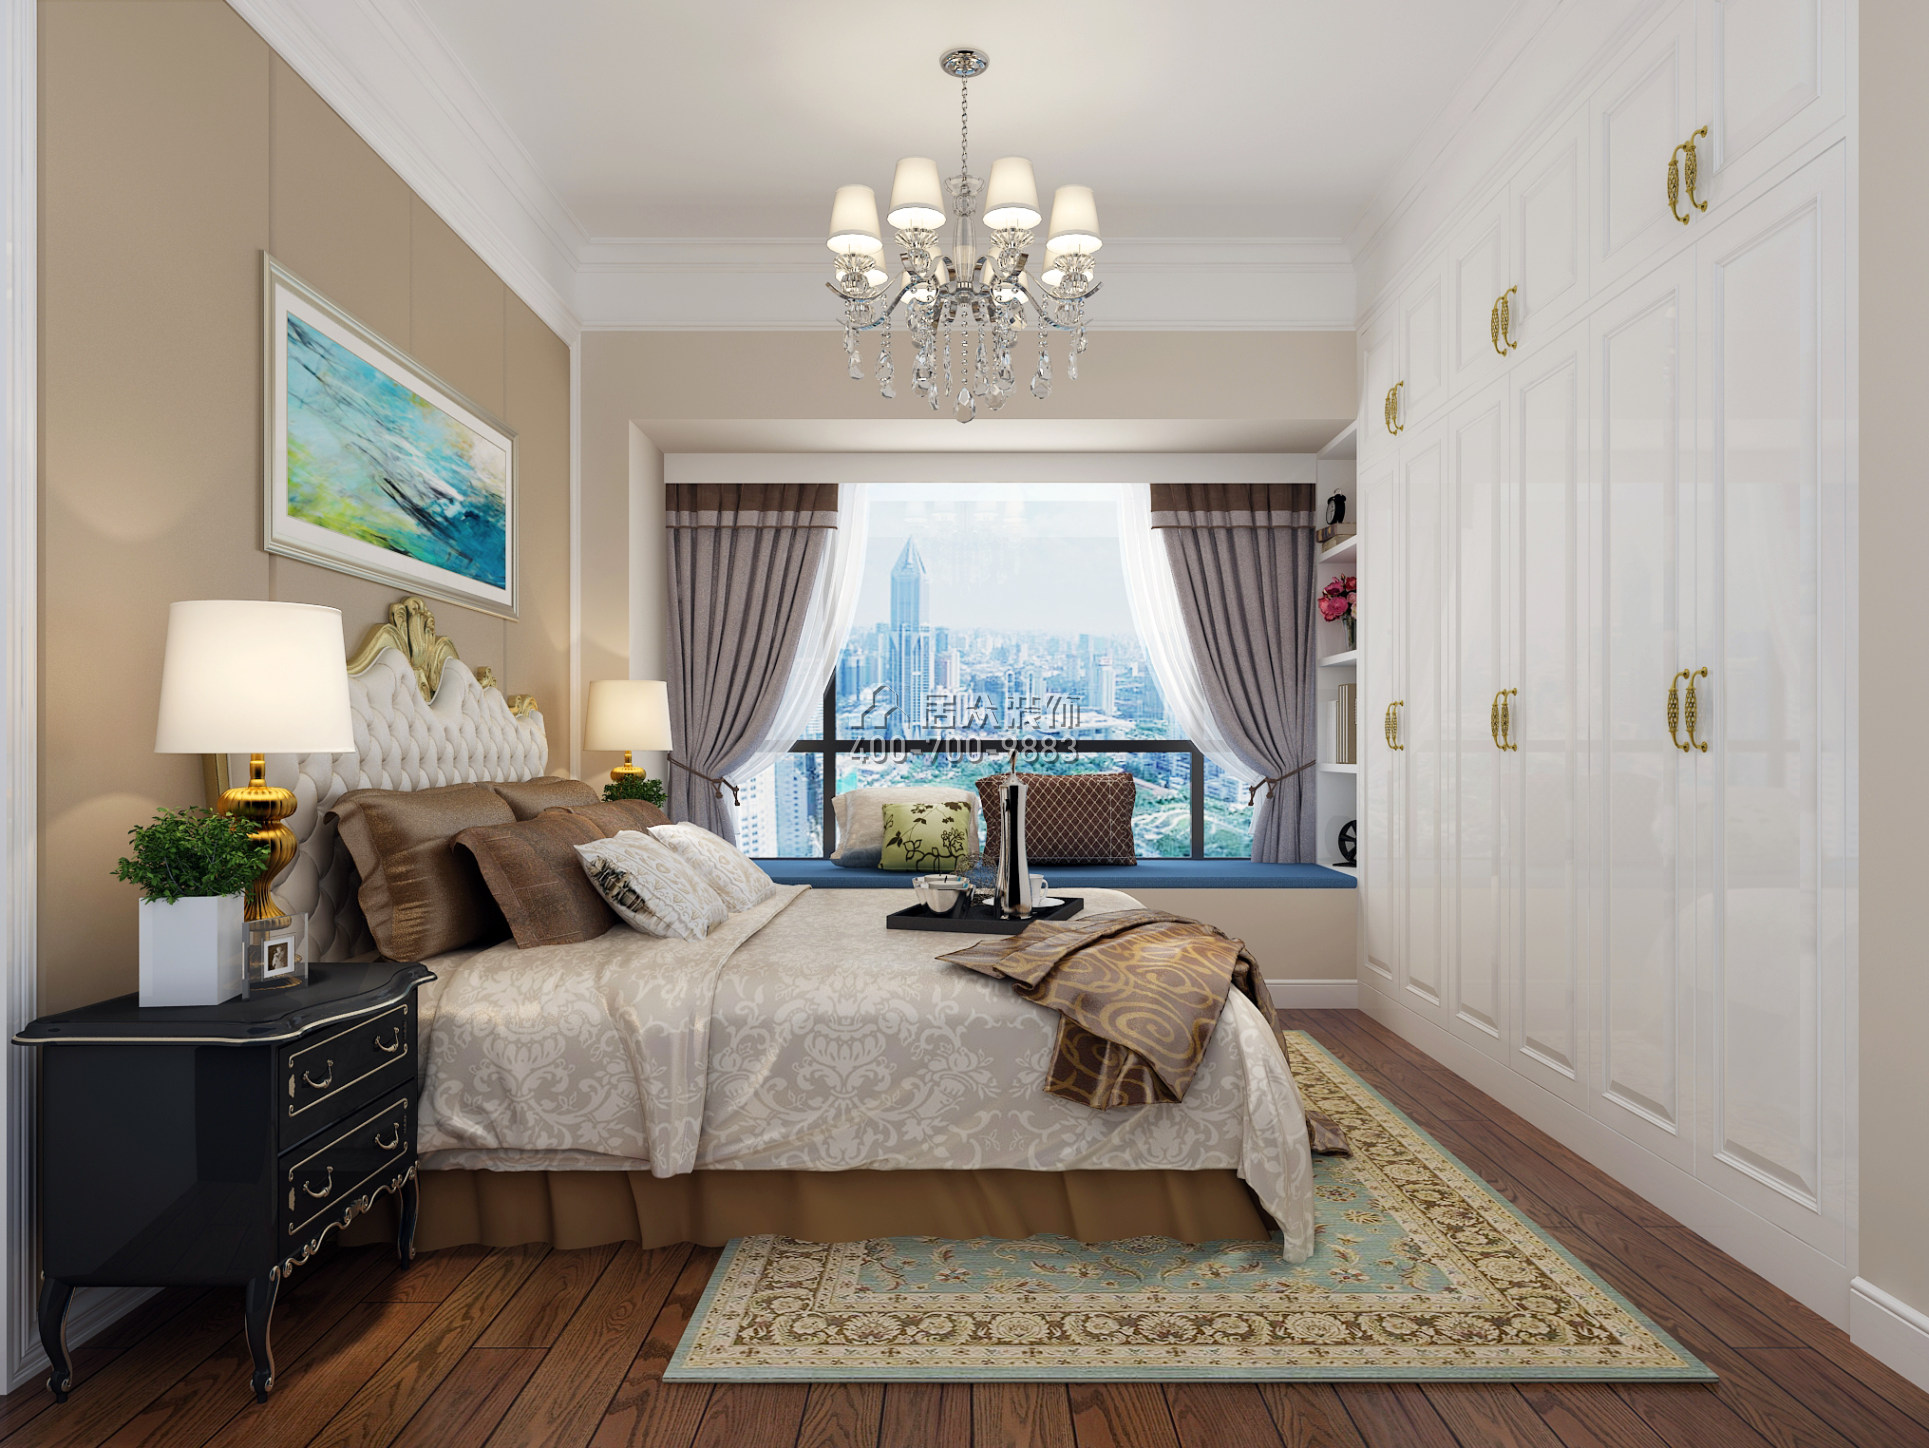 華盛·西薈城4期89平方米歐式風格平層戶型臥室裝修效果圖